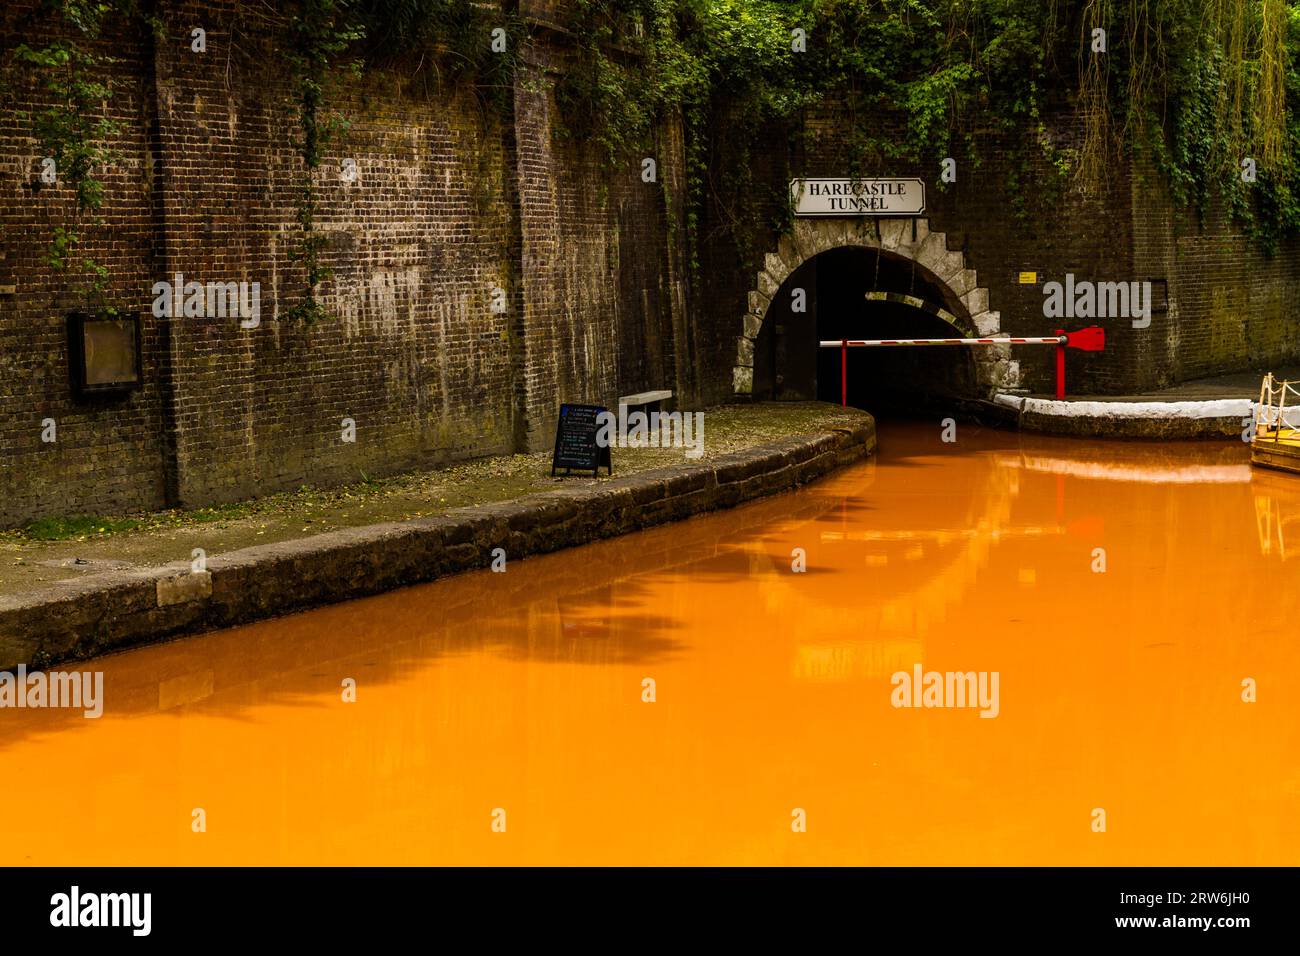 Le canal Trent et Mersey et l'entrée nord du tunnel Harecastle, Kidsgrove, Newcastle-under-Lyme. L'eau est orange car si l'argile deposi Banque D'Images